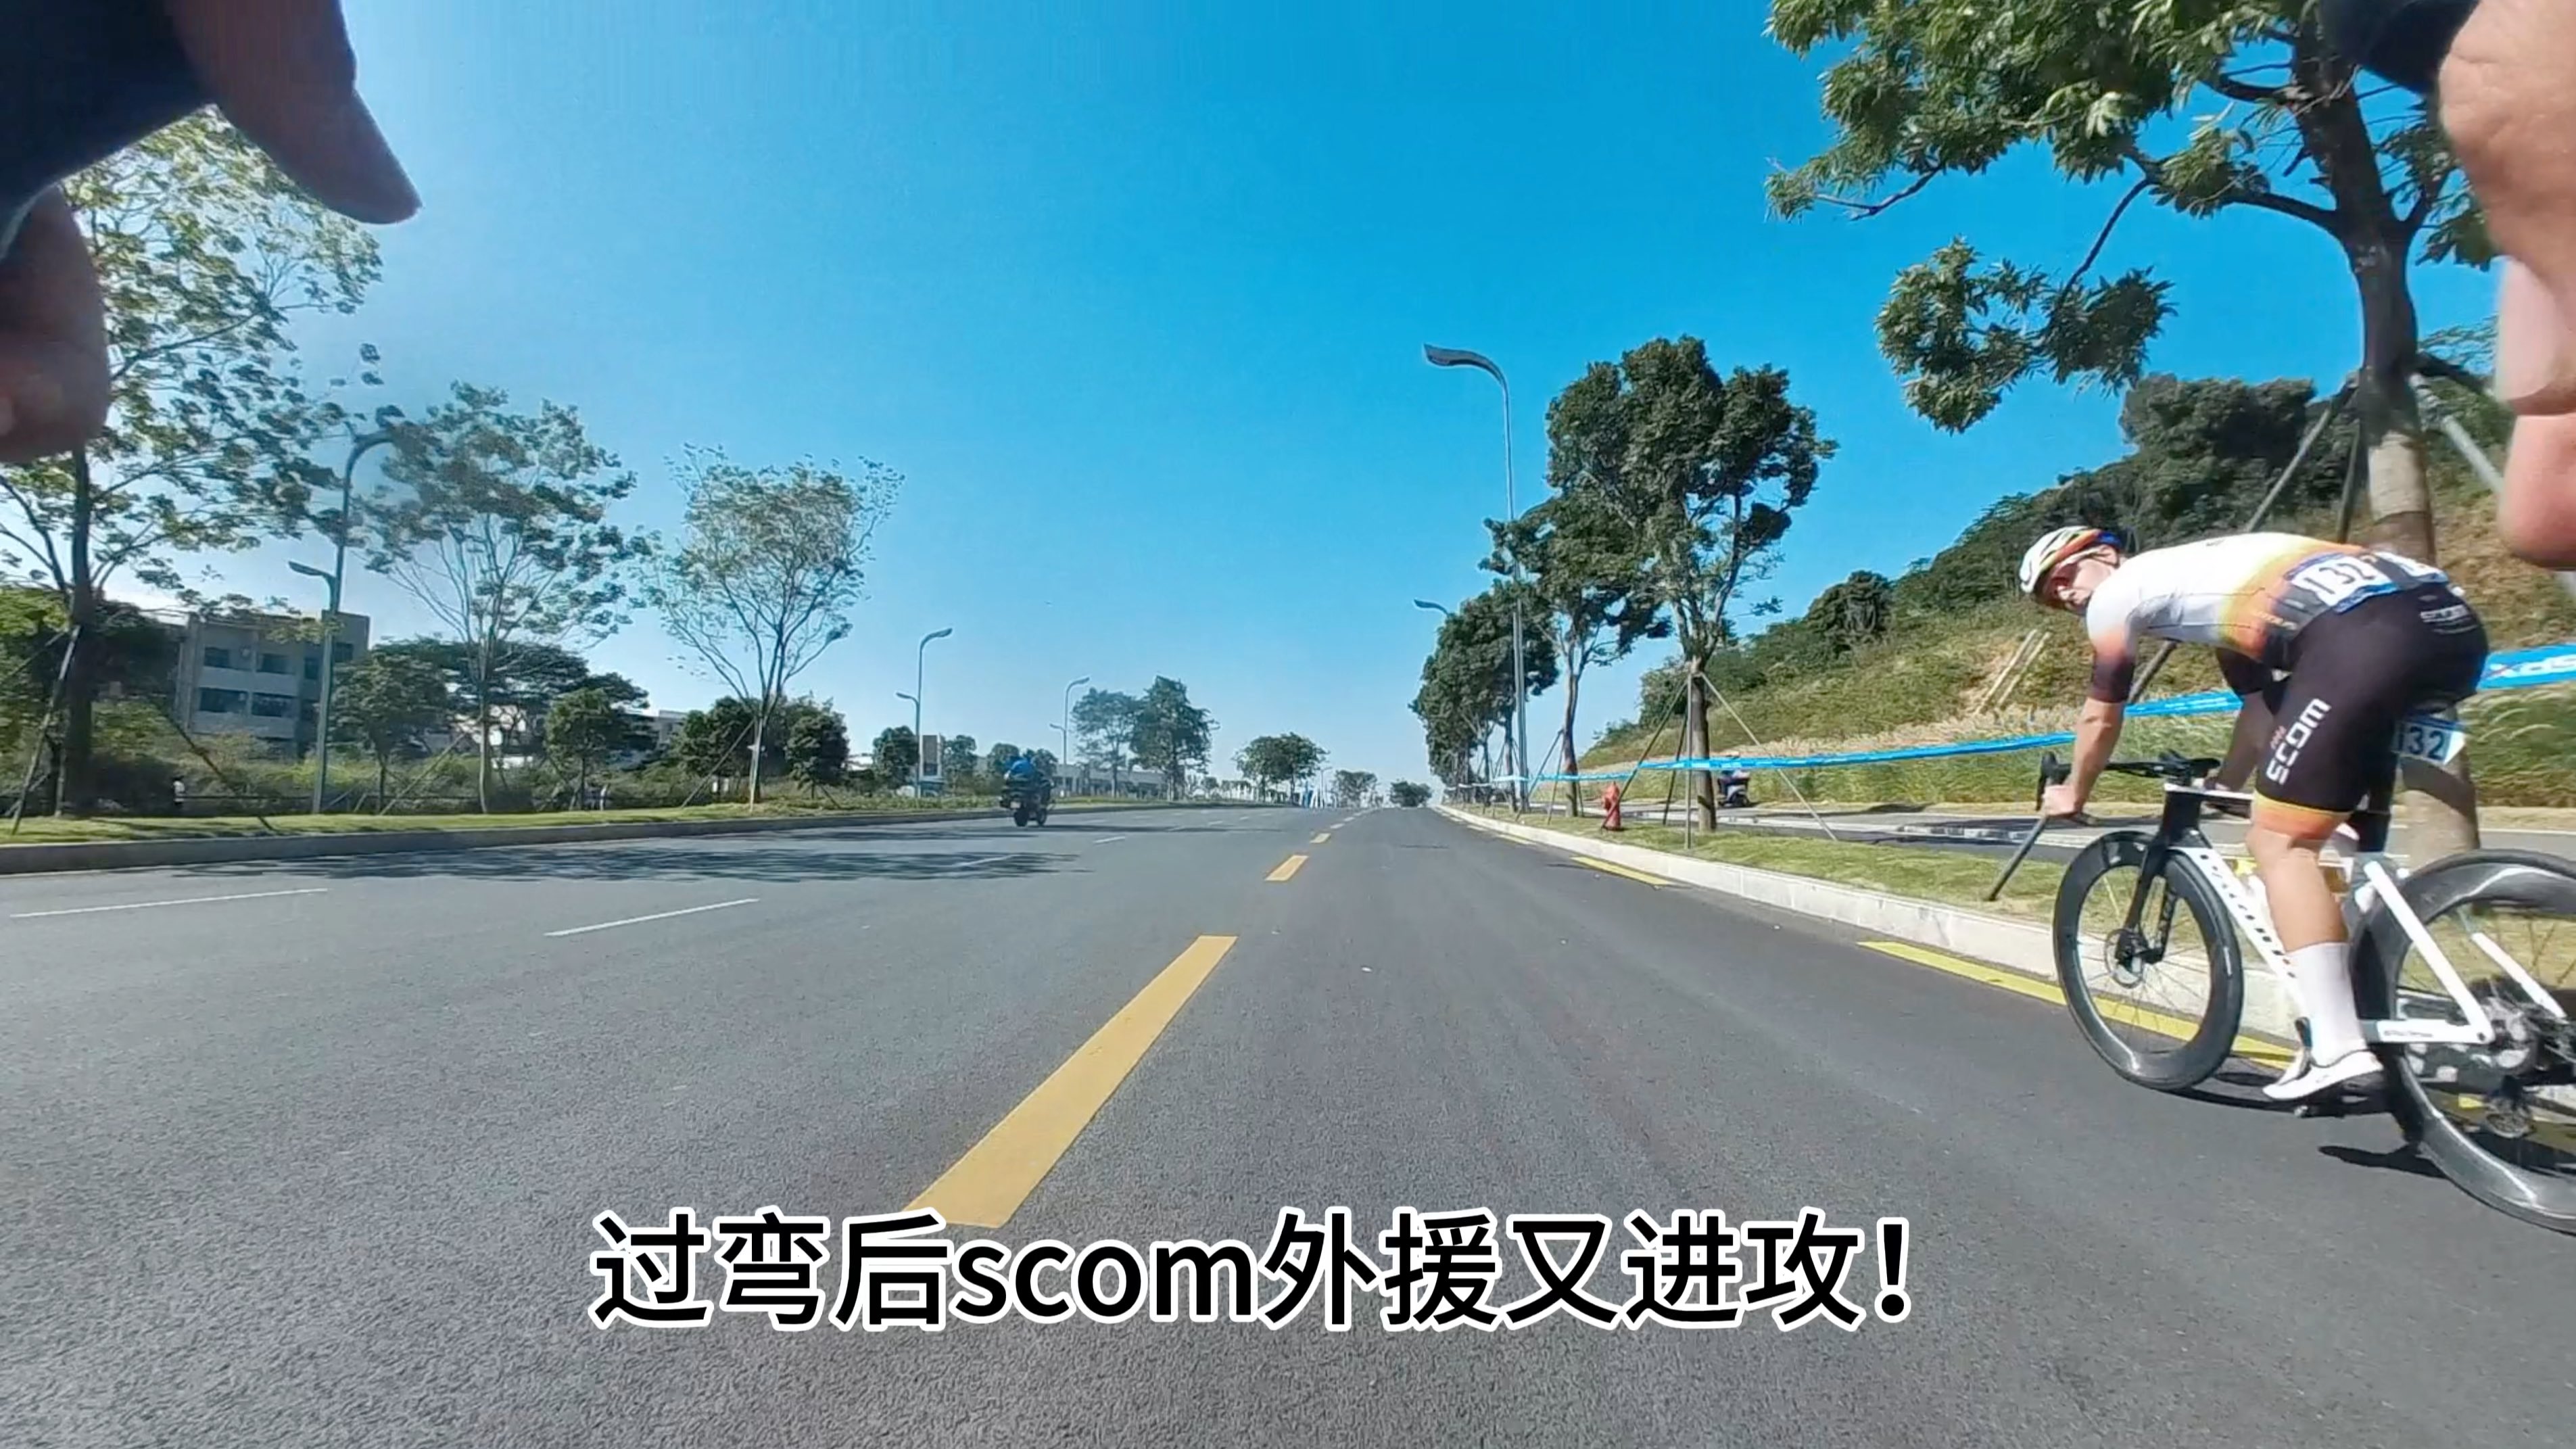 环深圳光明国际自行车赛职业组 第一视角带你看UP如何战胜外援拿下途中冲刺点